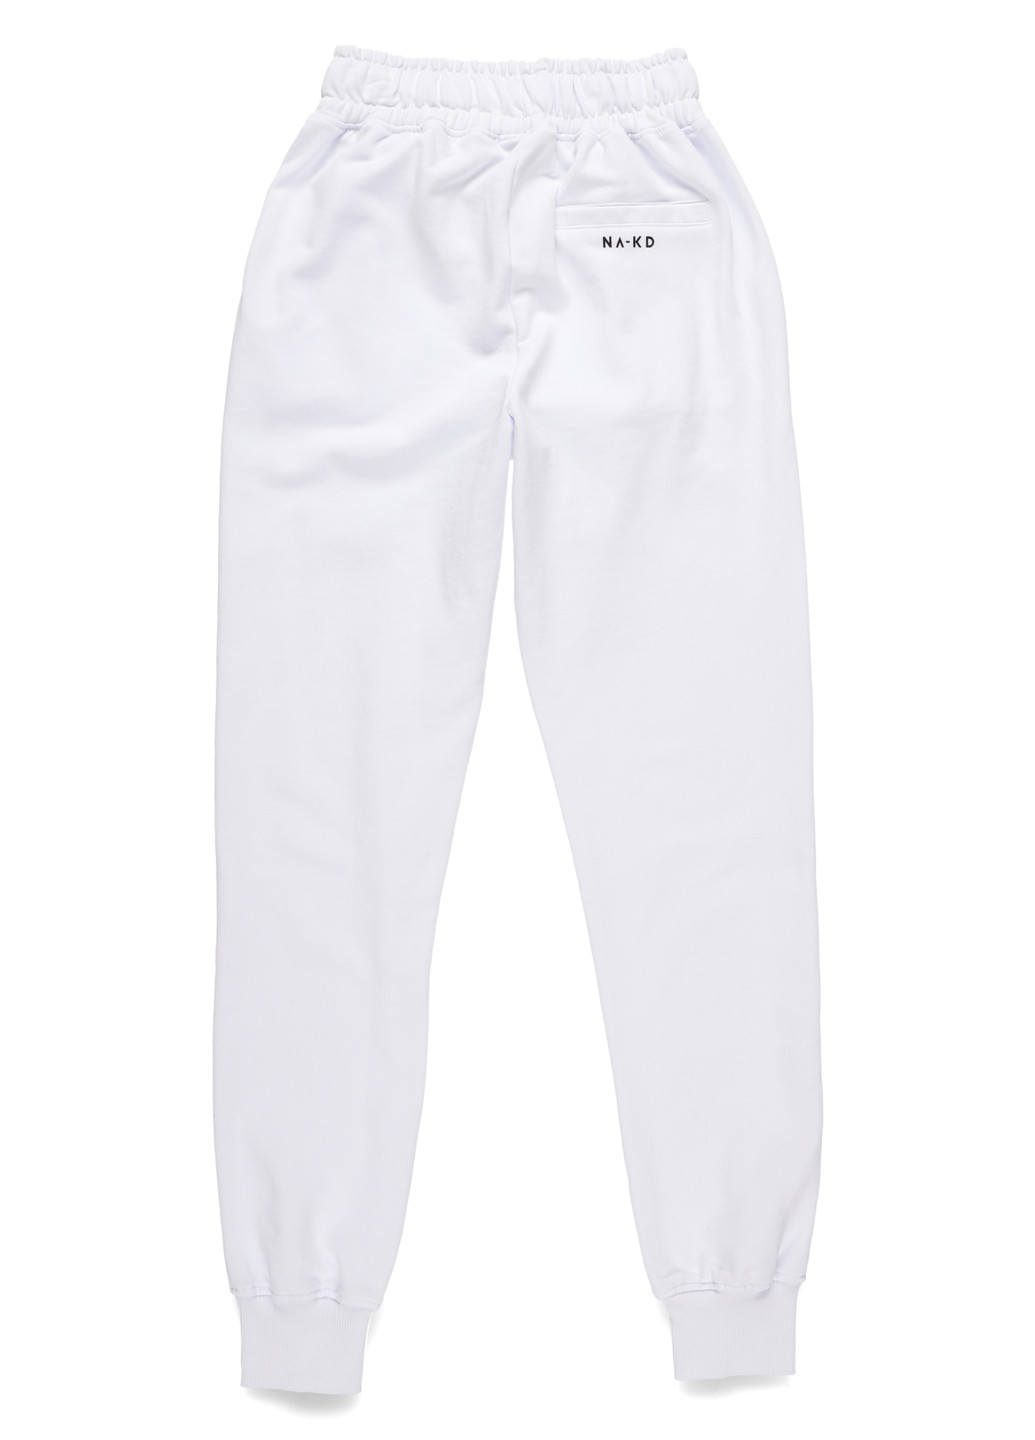 Белые спортивные демисезонные джоггеры брюки NA-KD